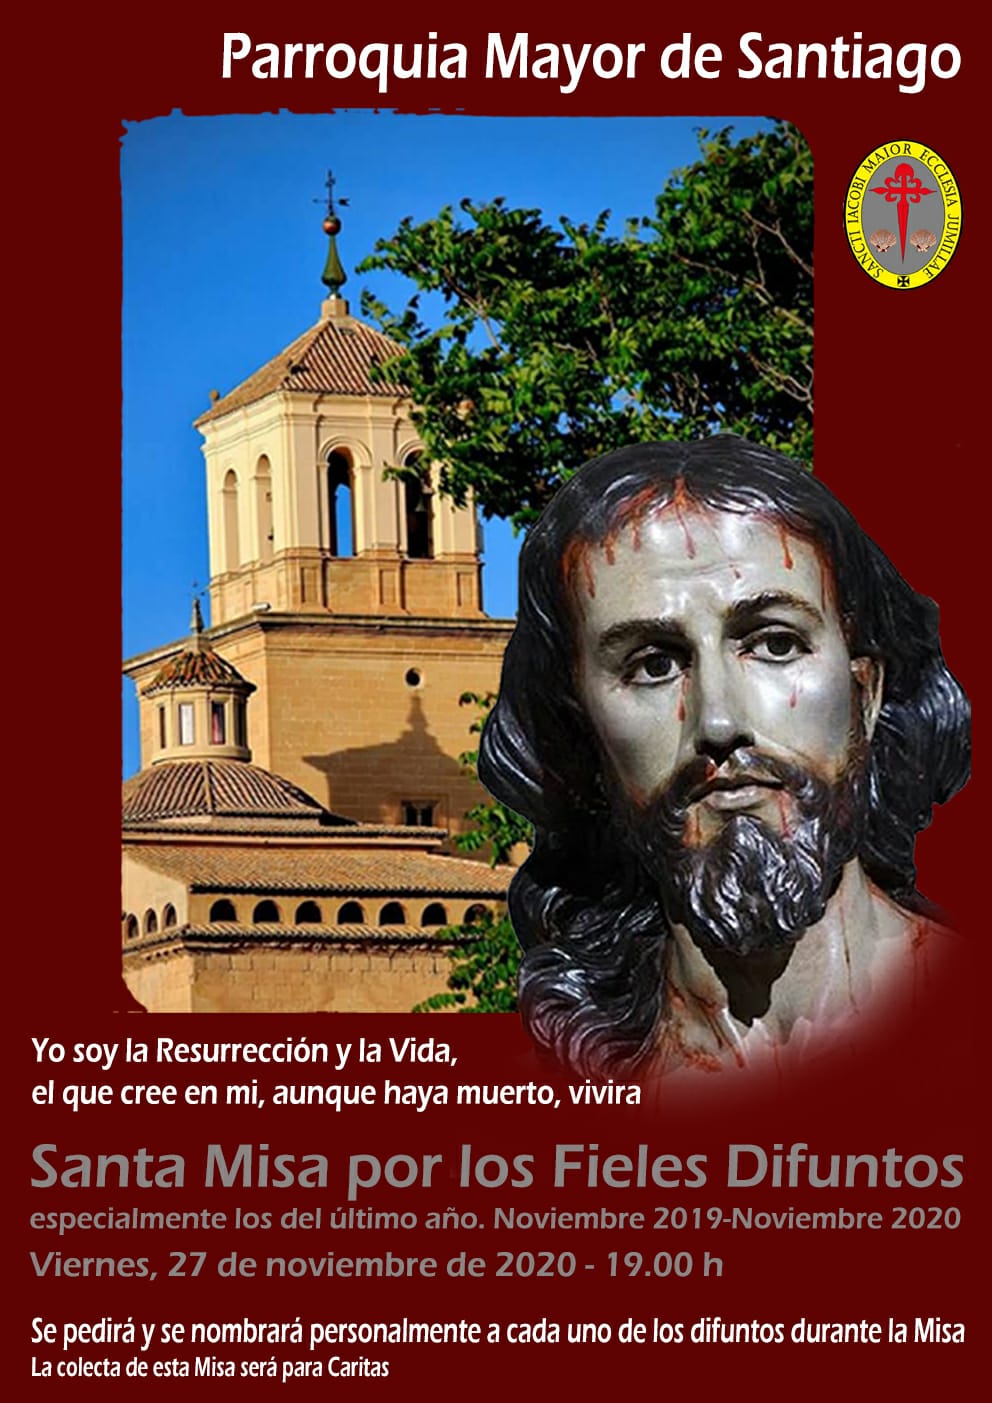 Este tarde en Santiago se oficiará una misa por los fieles difuntos